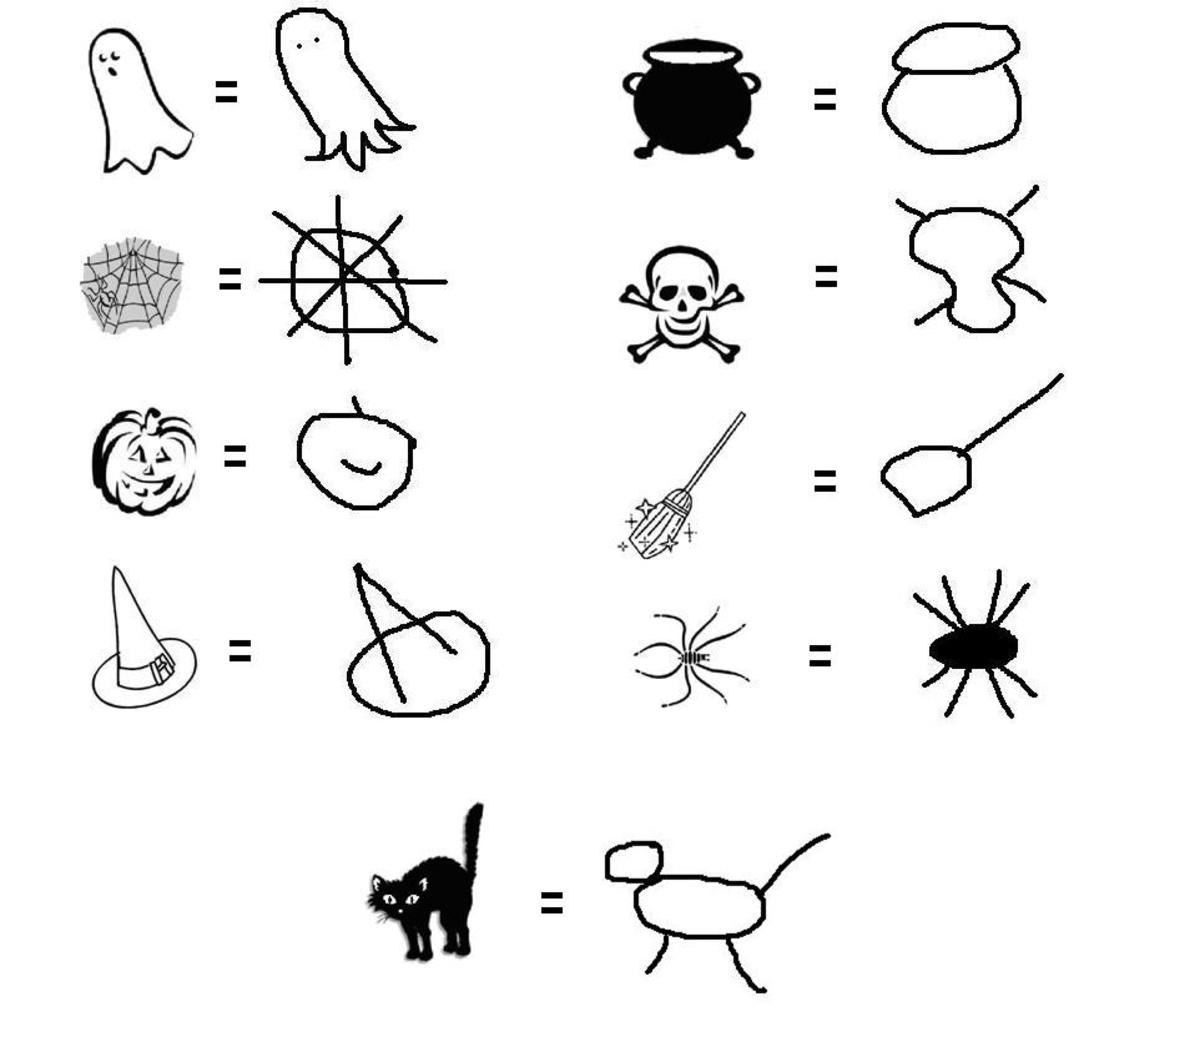 Quick representations of the clip-art symbols.